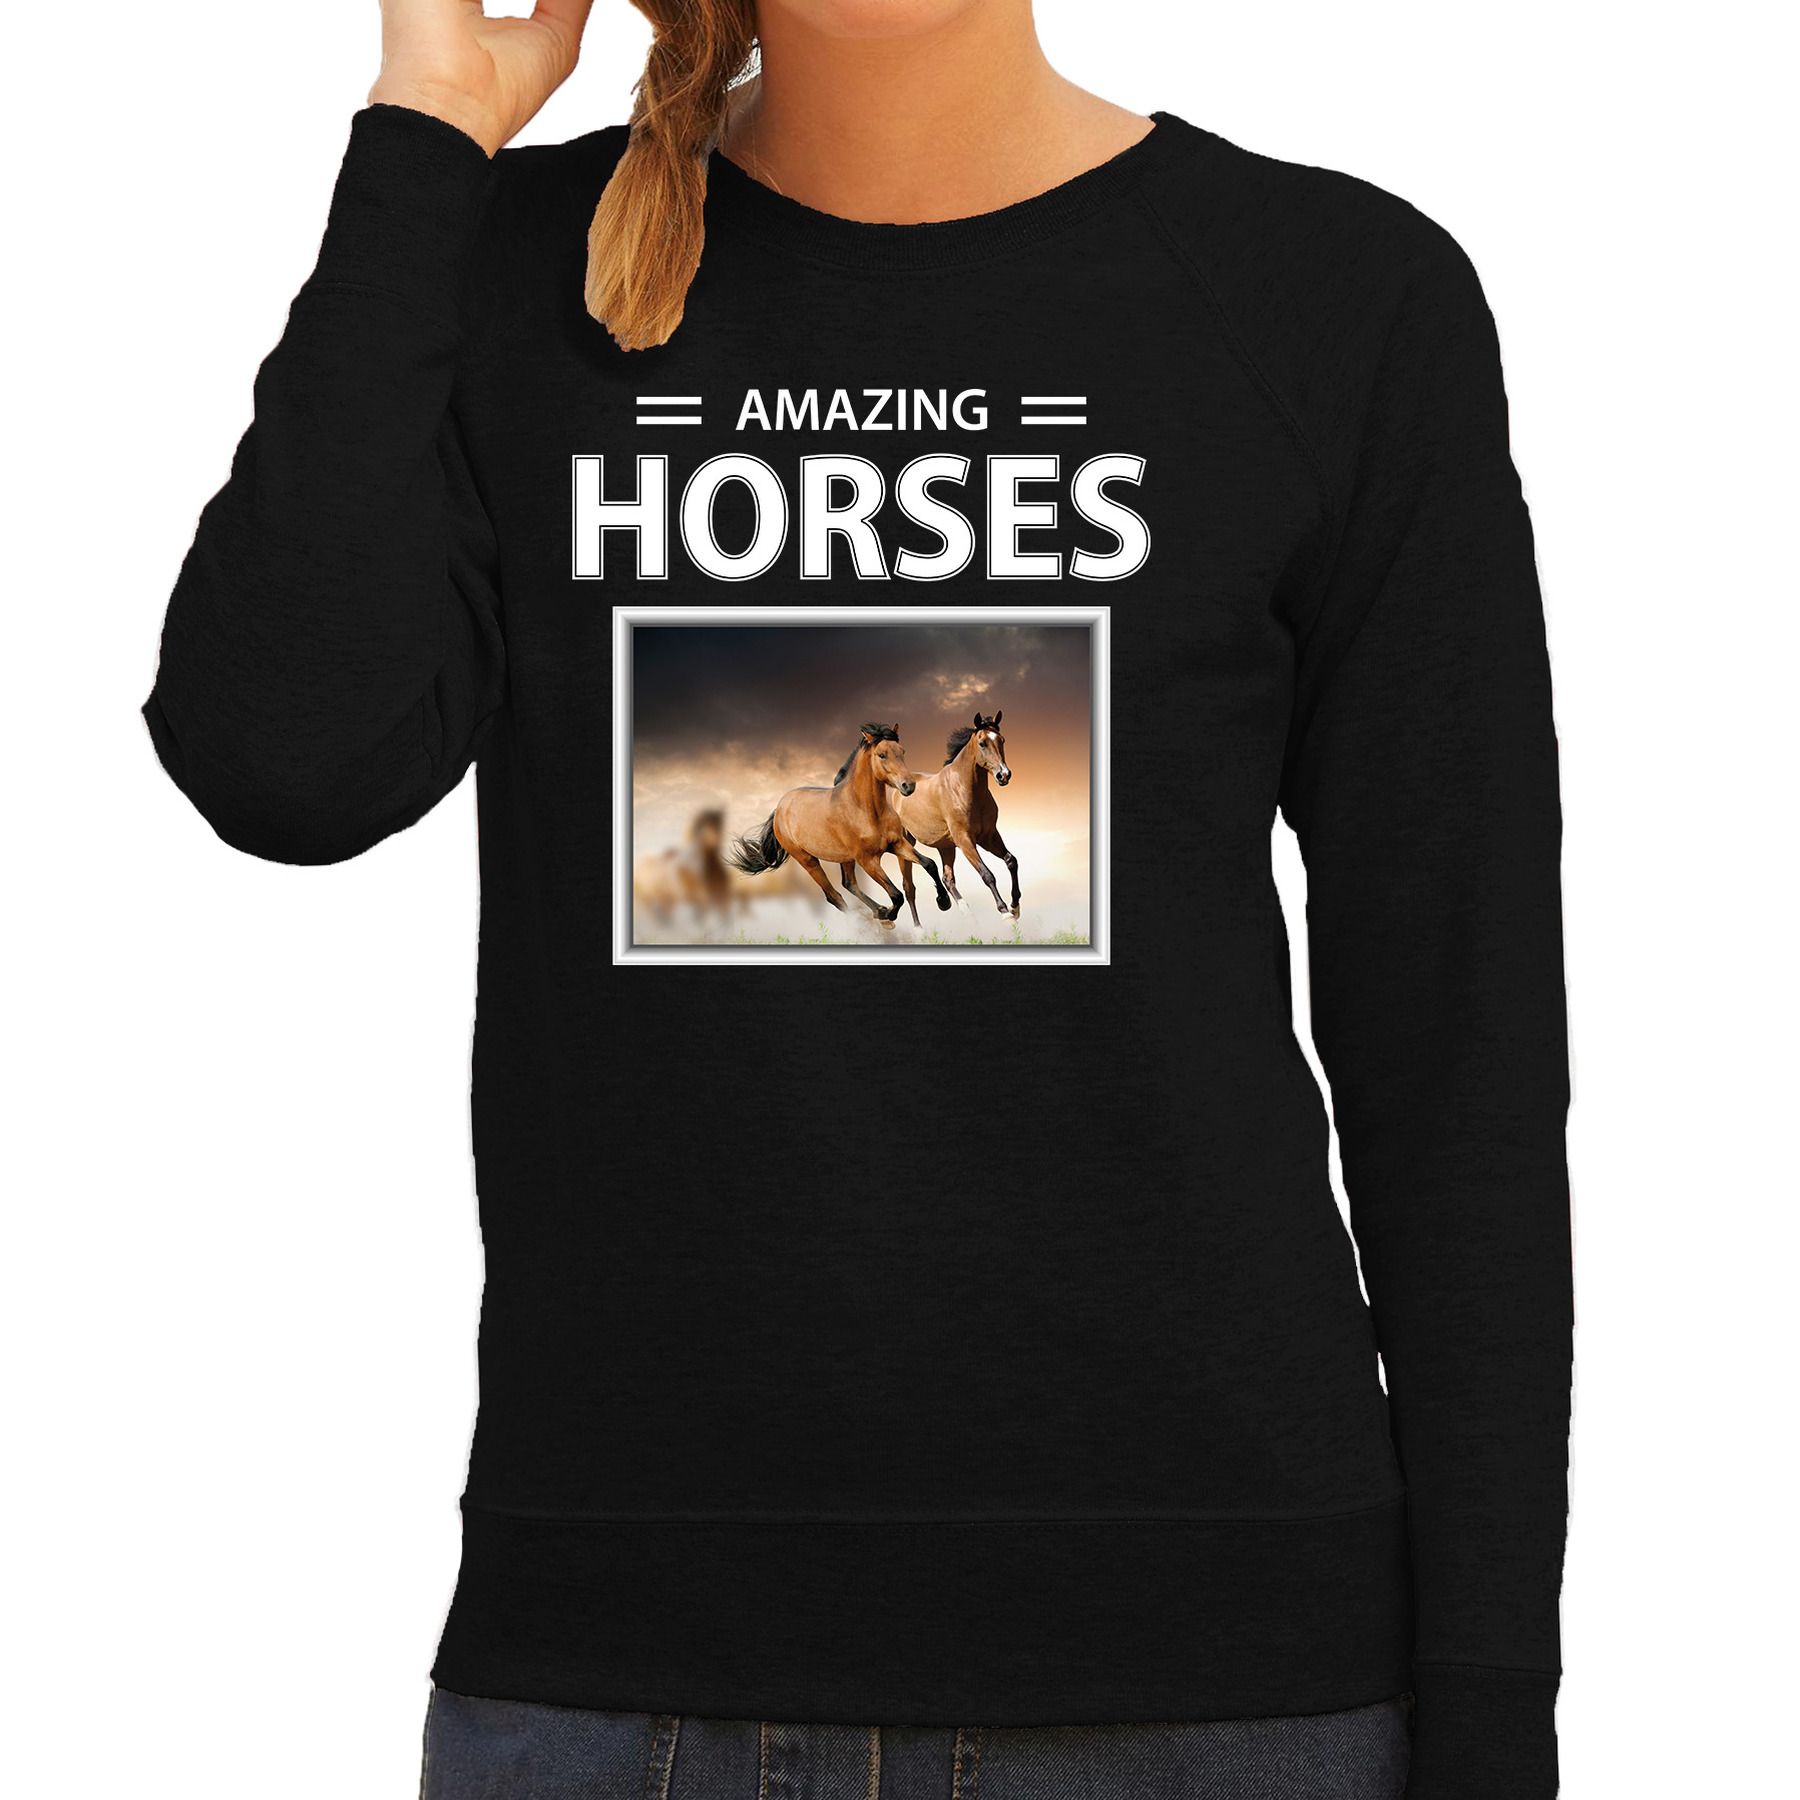 Bruine paarden sweater / trui met dieren foto amazing horses zwart voor dames